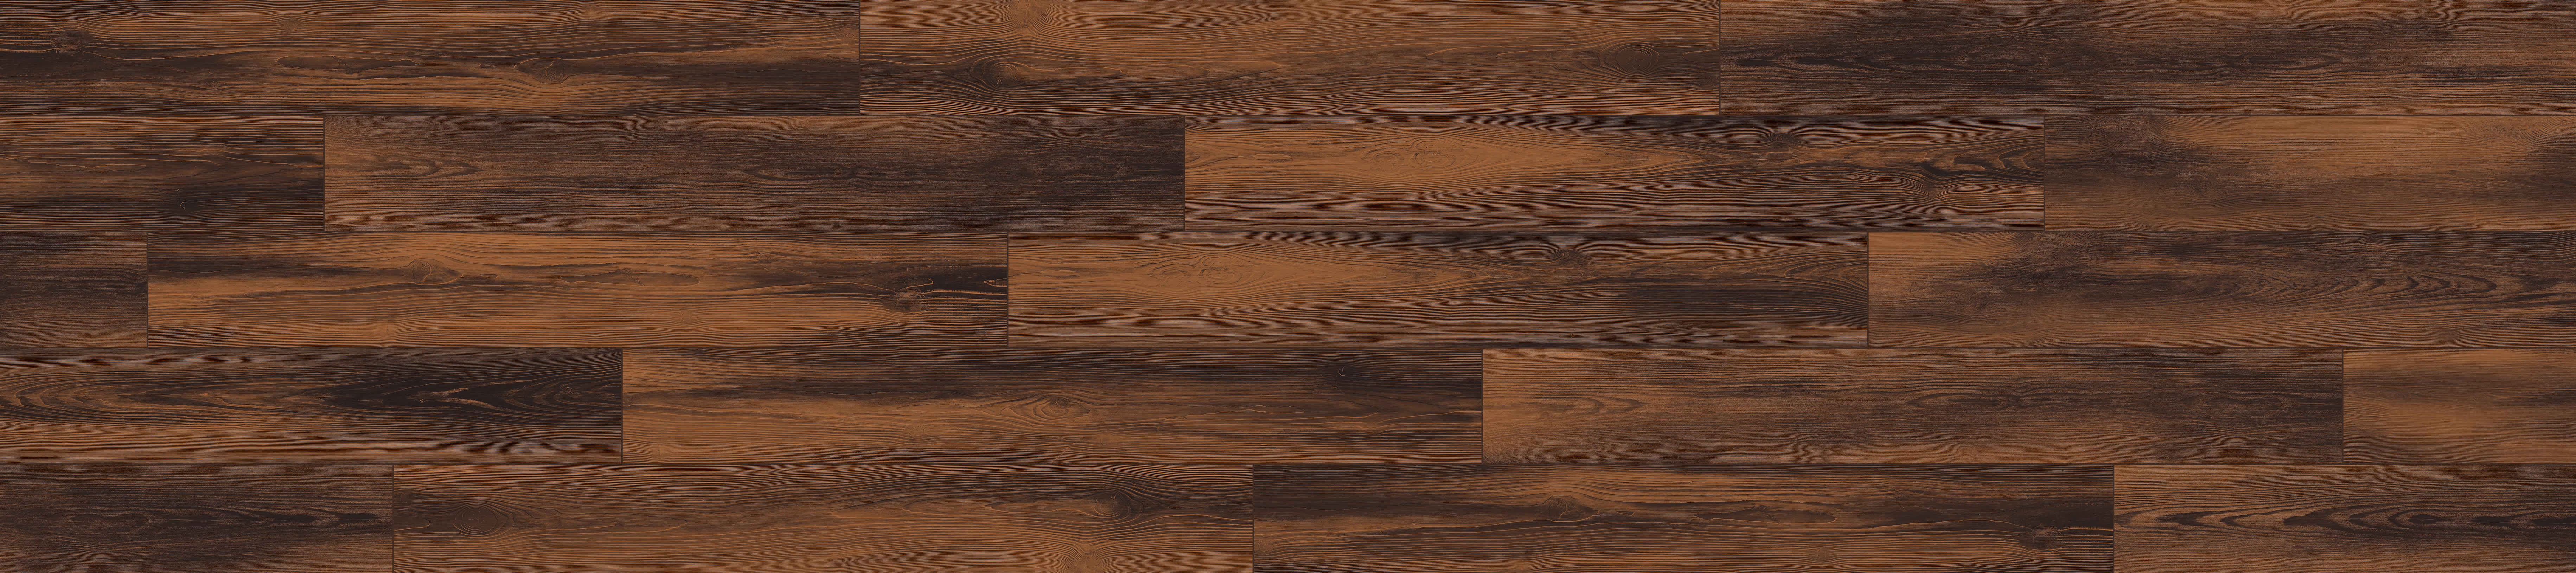 brown flooring